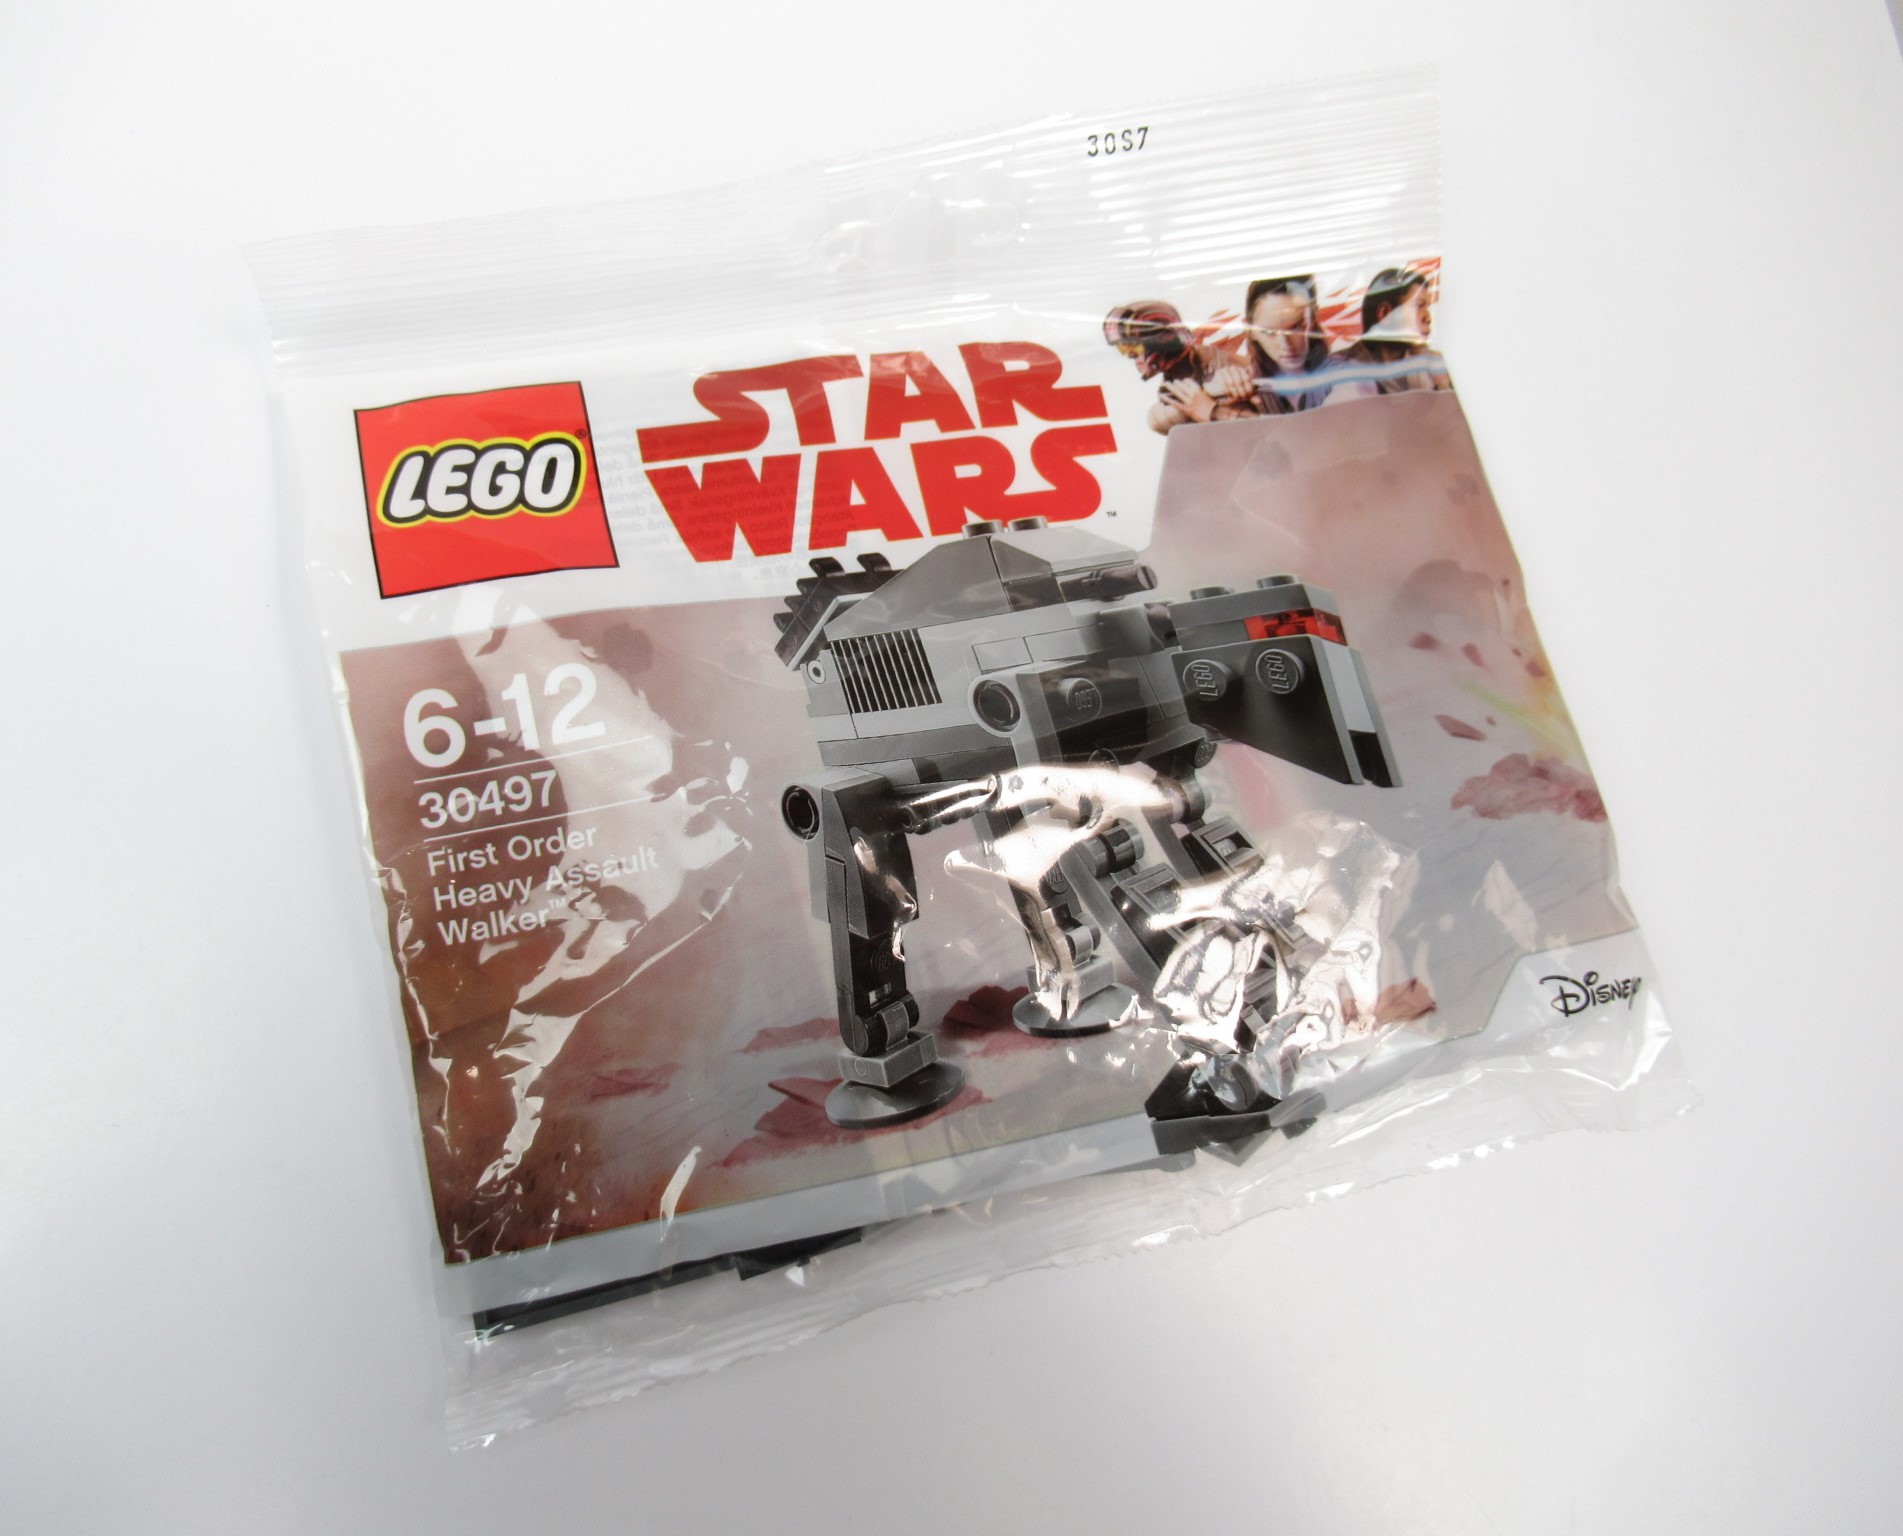 Billede af LEGO Star Wars 30497 First Order Heavy Assault Walker Polybag